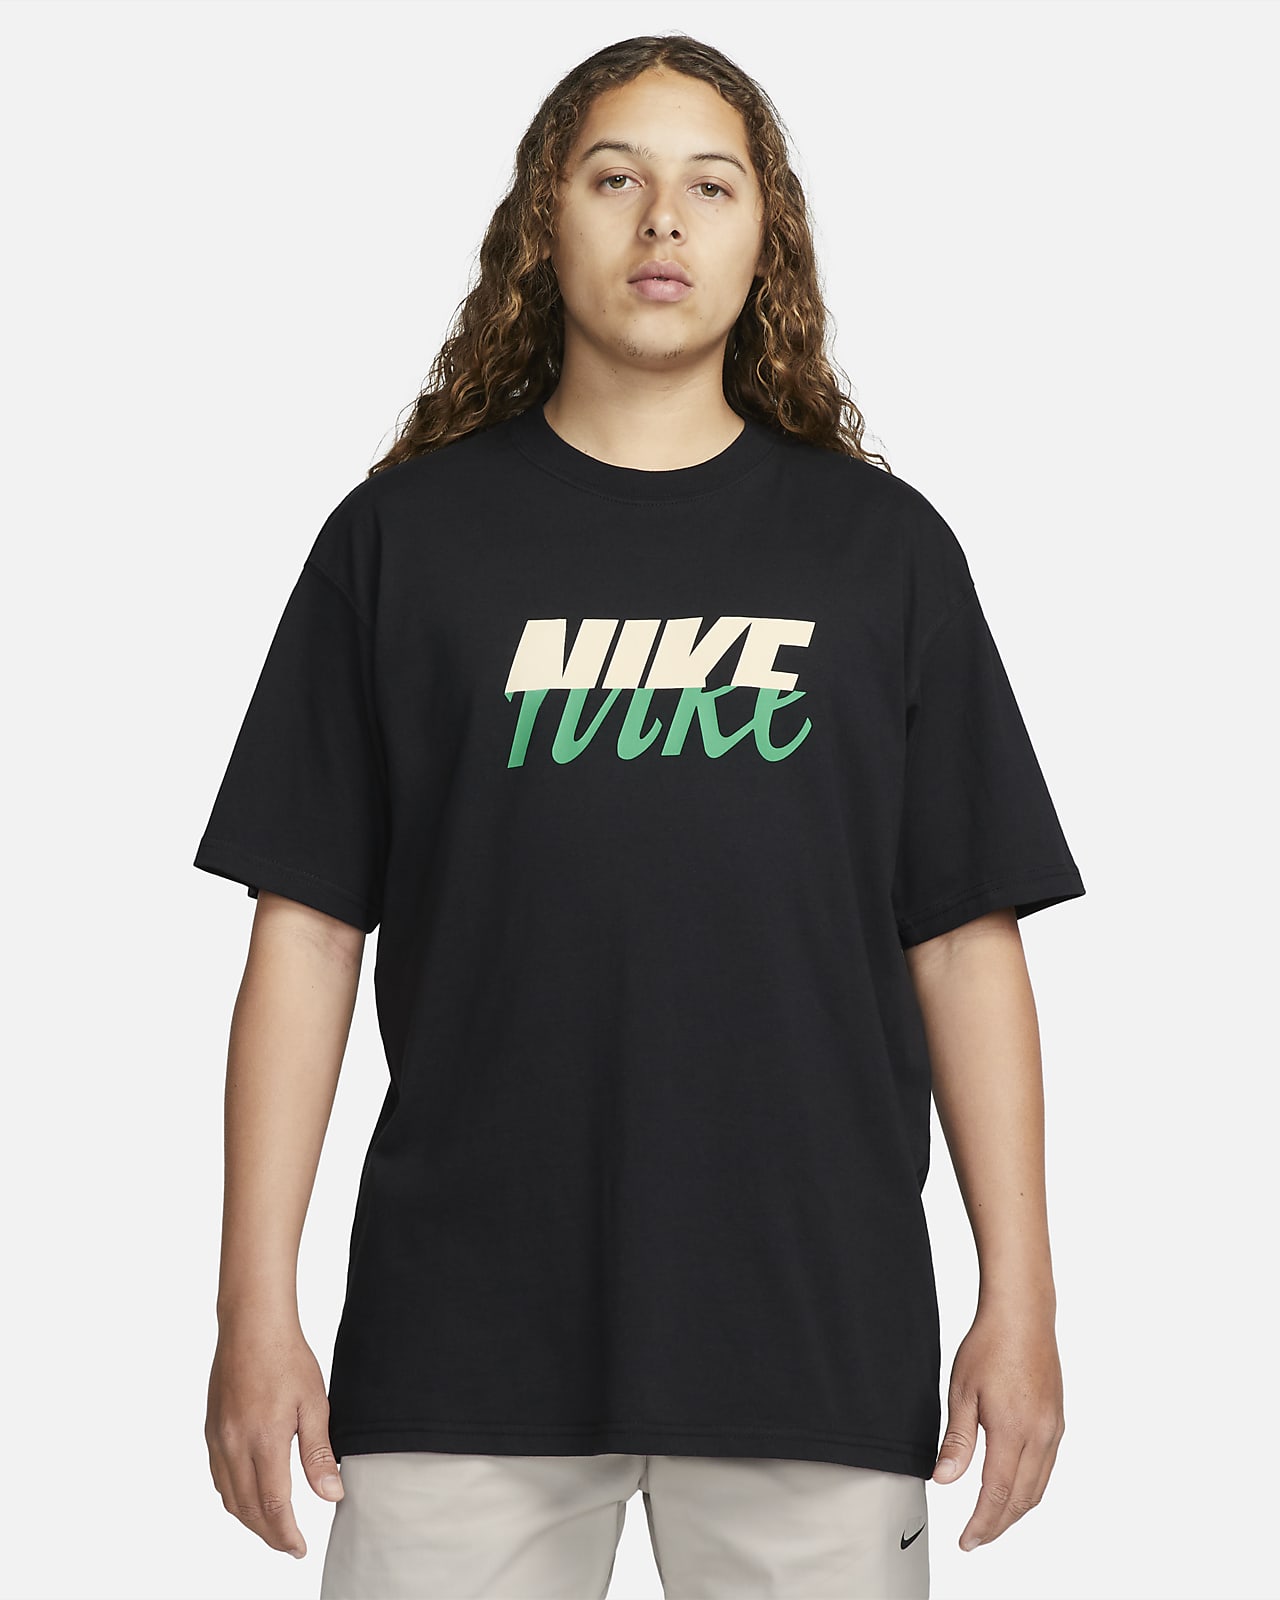 Nike Men's Spring Futura Logo T-Shirt